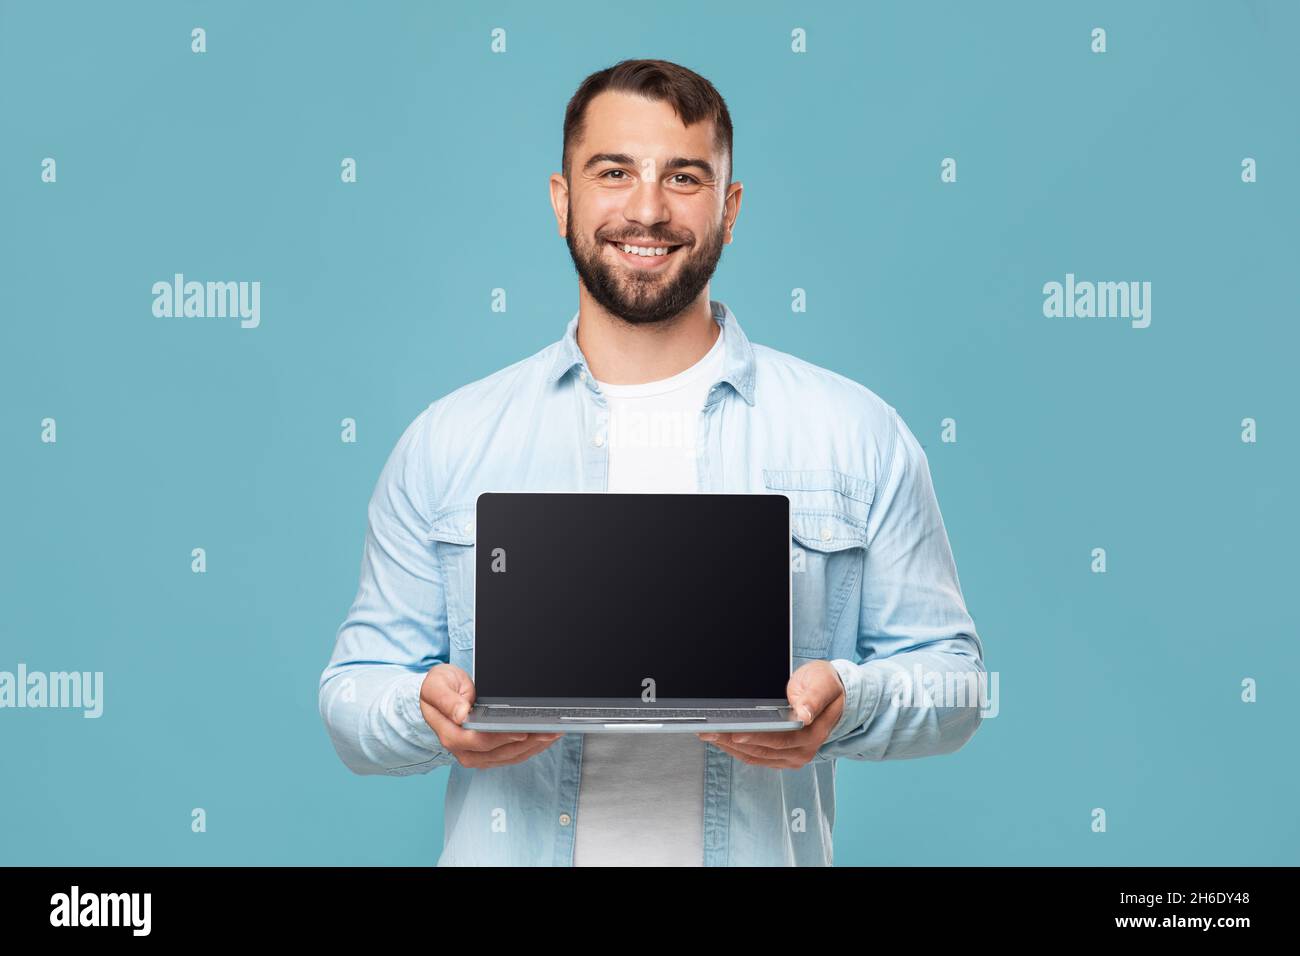 Sympathique heureux adulte européen homme montrant ordinateur portable avec écran blanc, isolé sur fond bleu, espace libre Banque D'Images